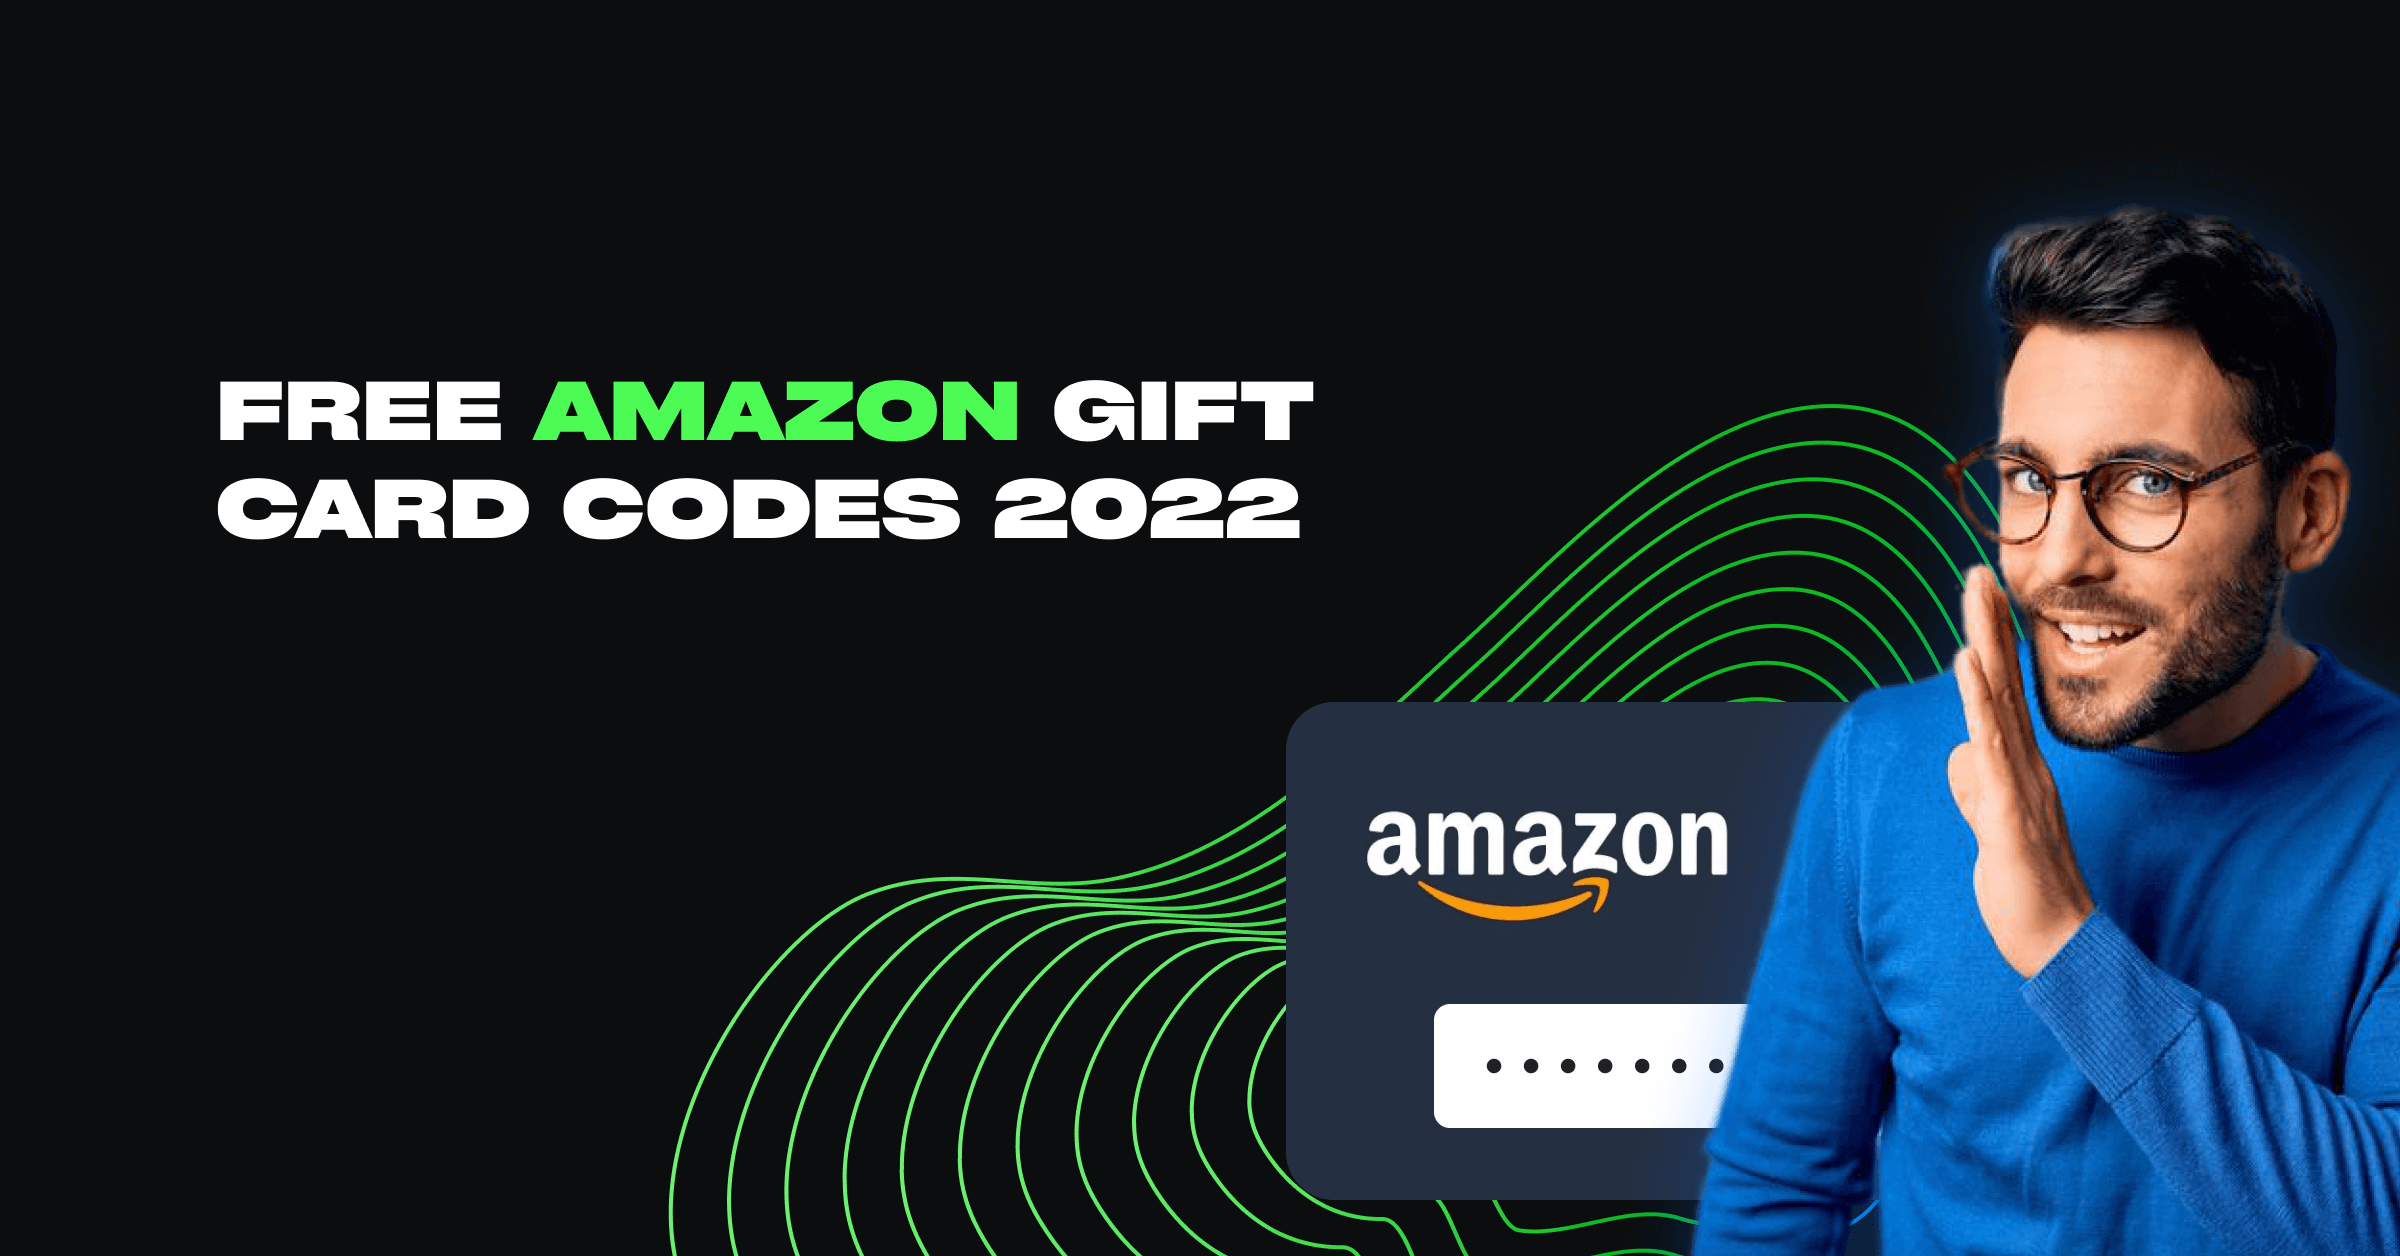 free amazon gift card codes 2022 image 1